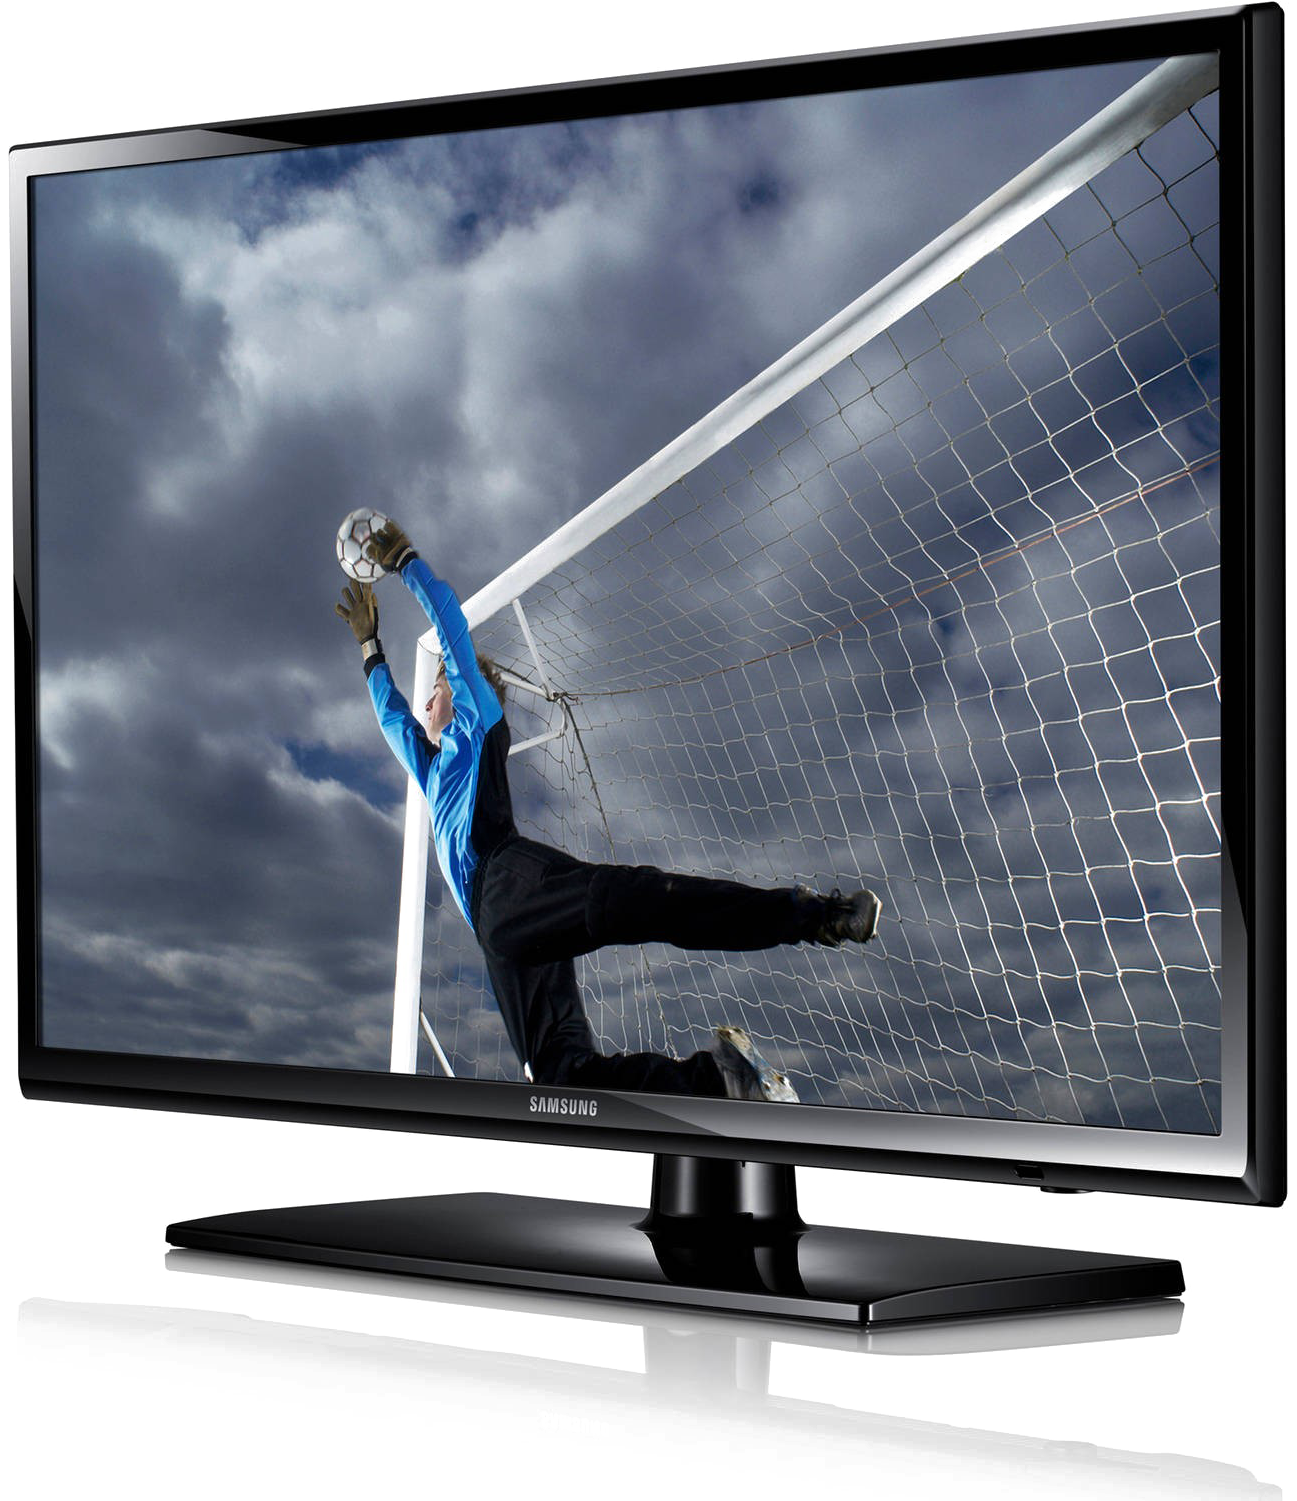 Led Television Png Transparent Image - Samsung 40 Led Tv (800x800), Png Download